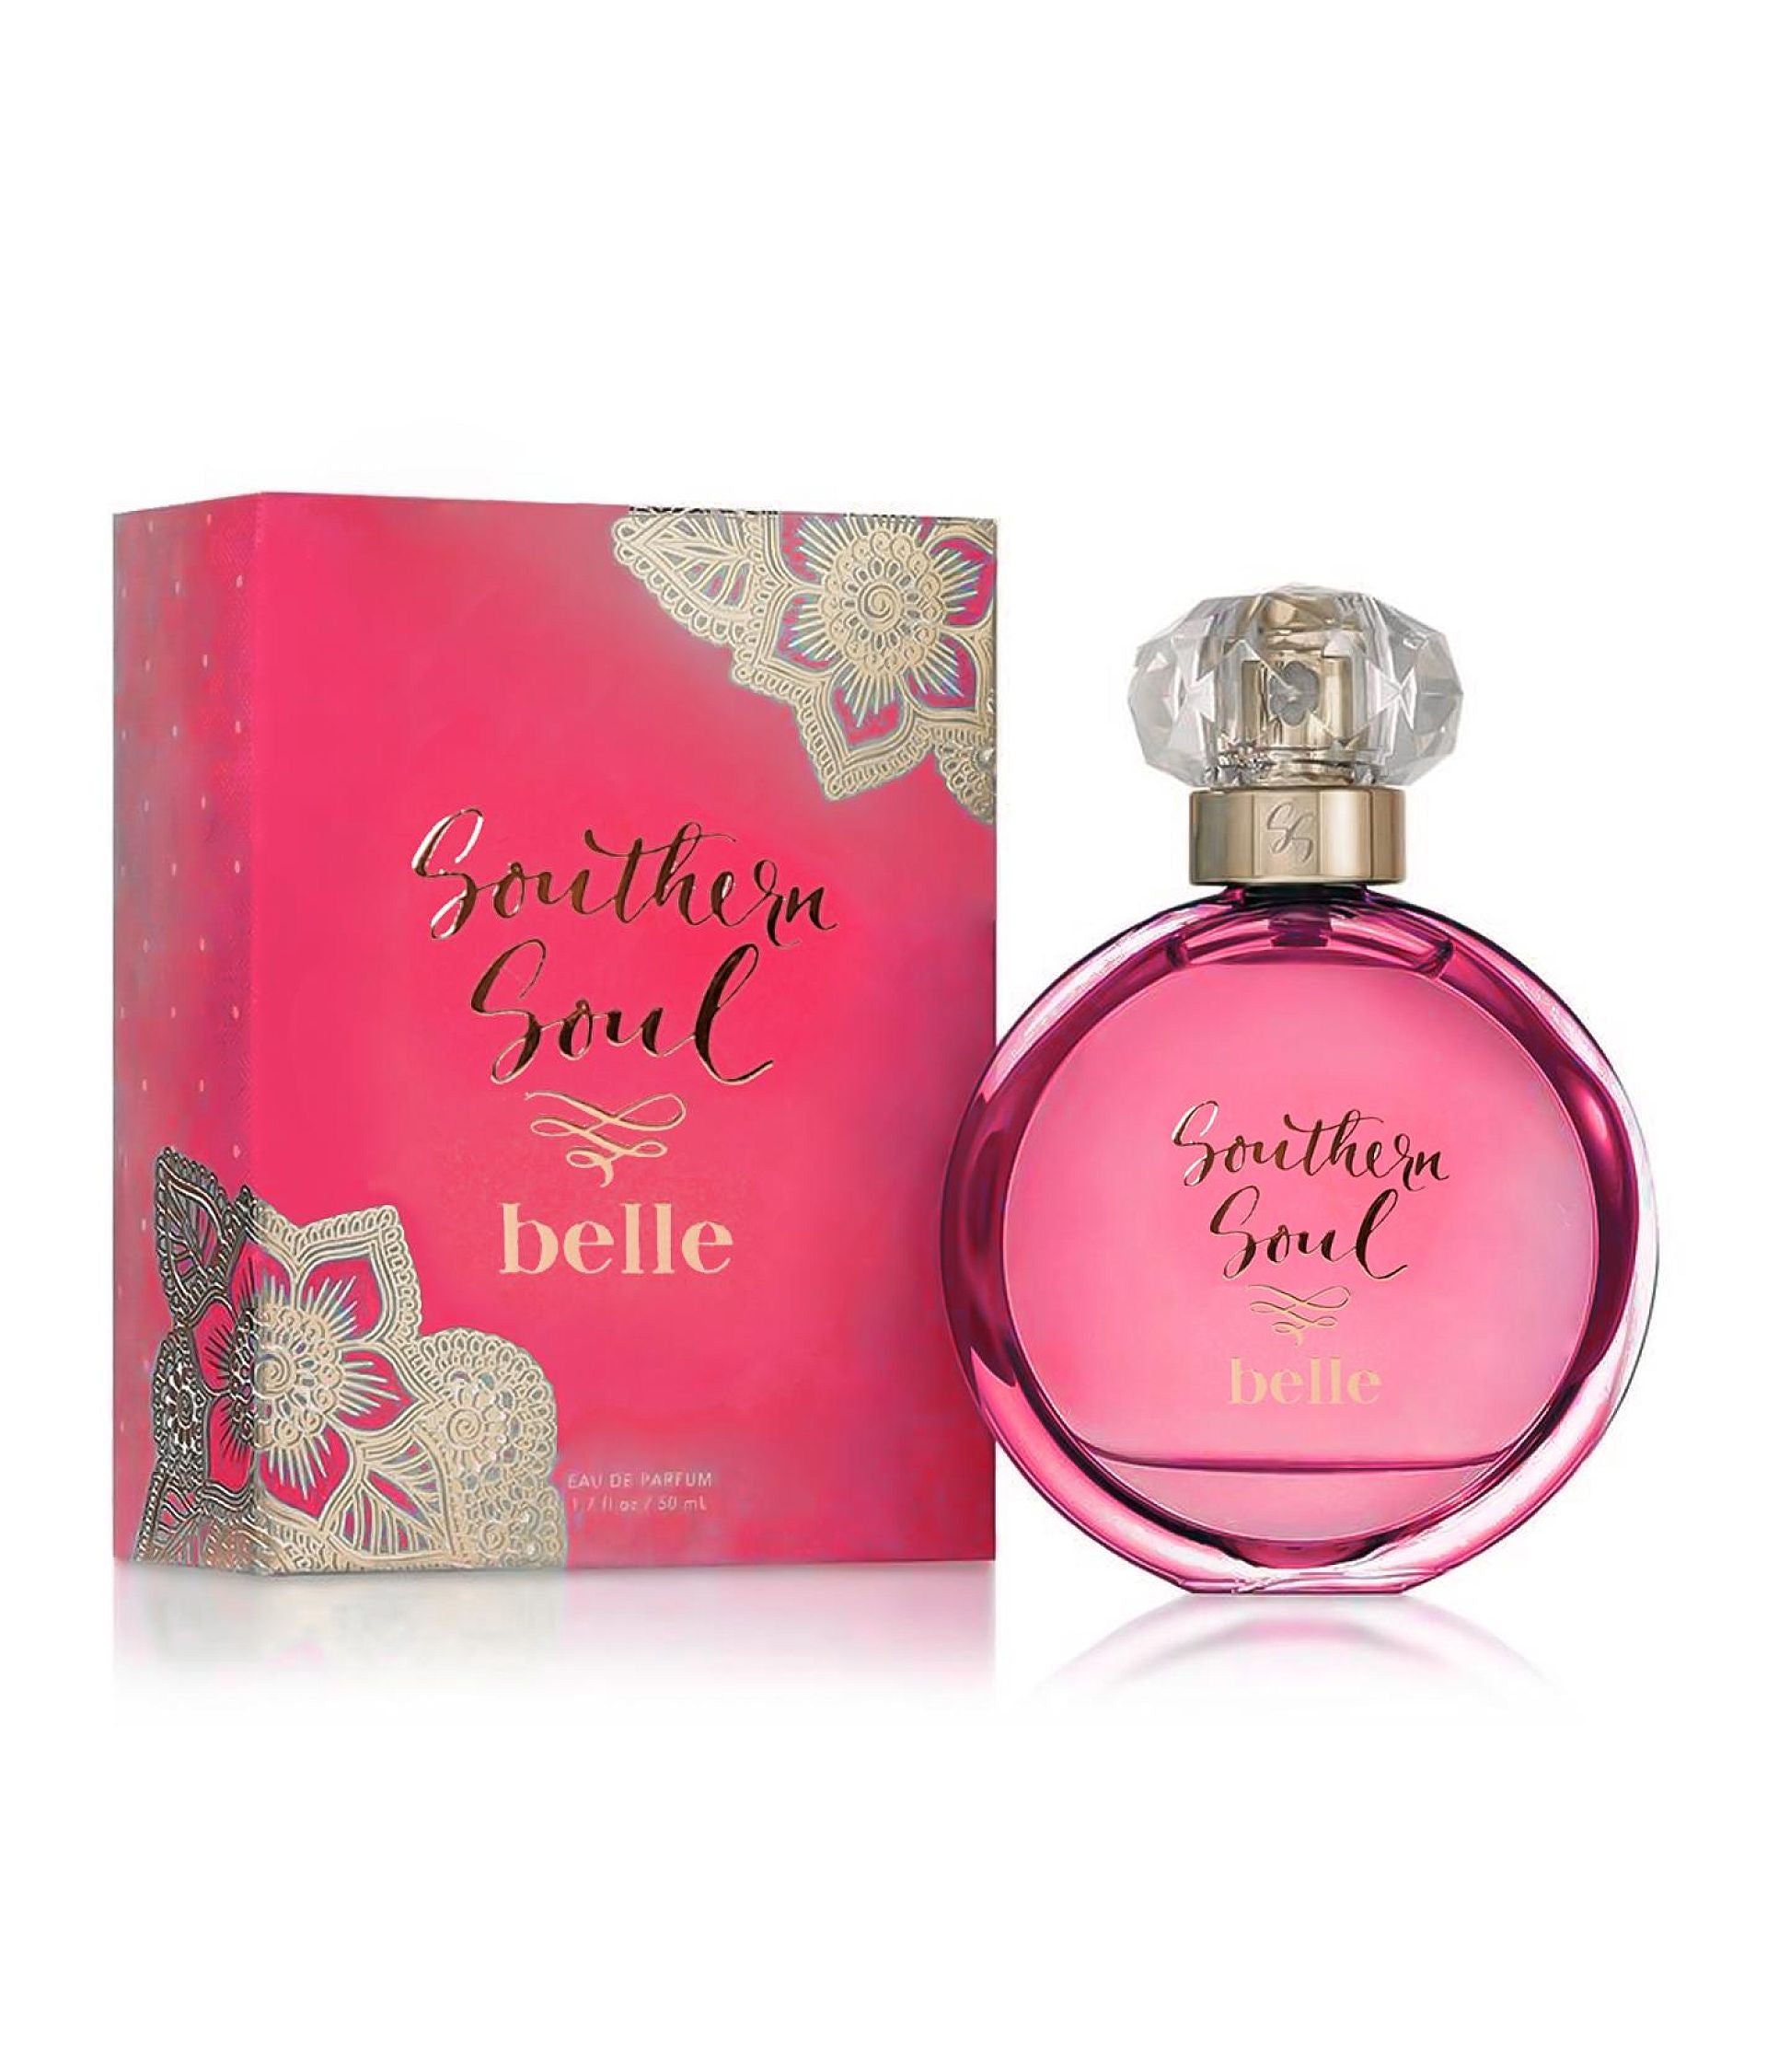 Southern Soul Belle Perfume